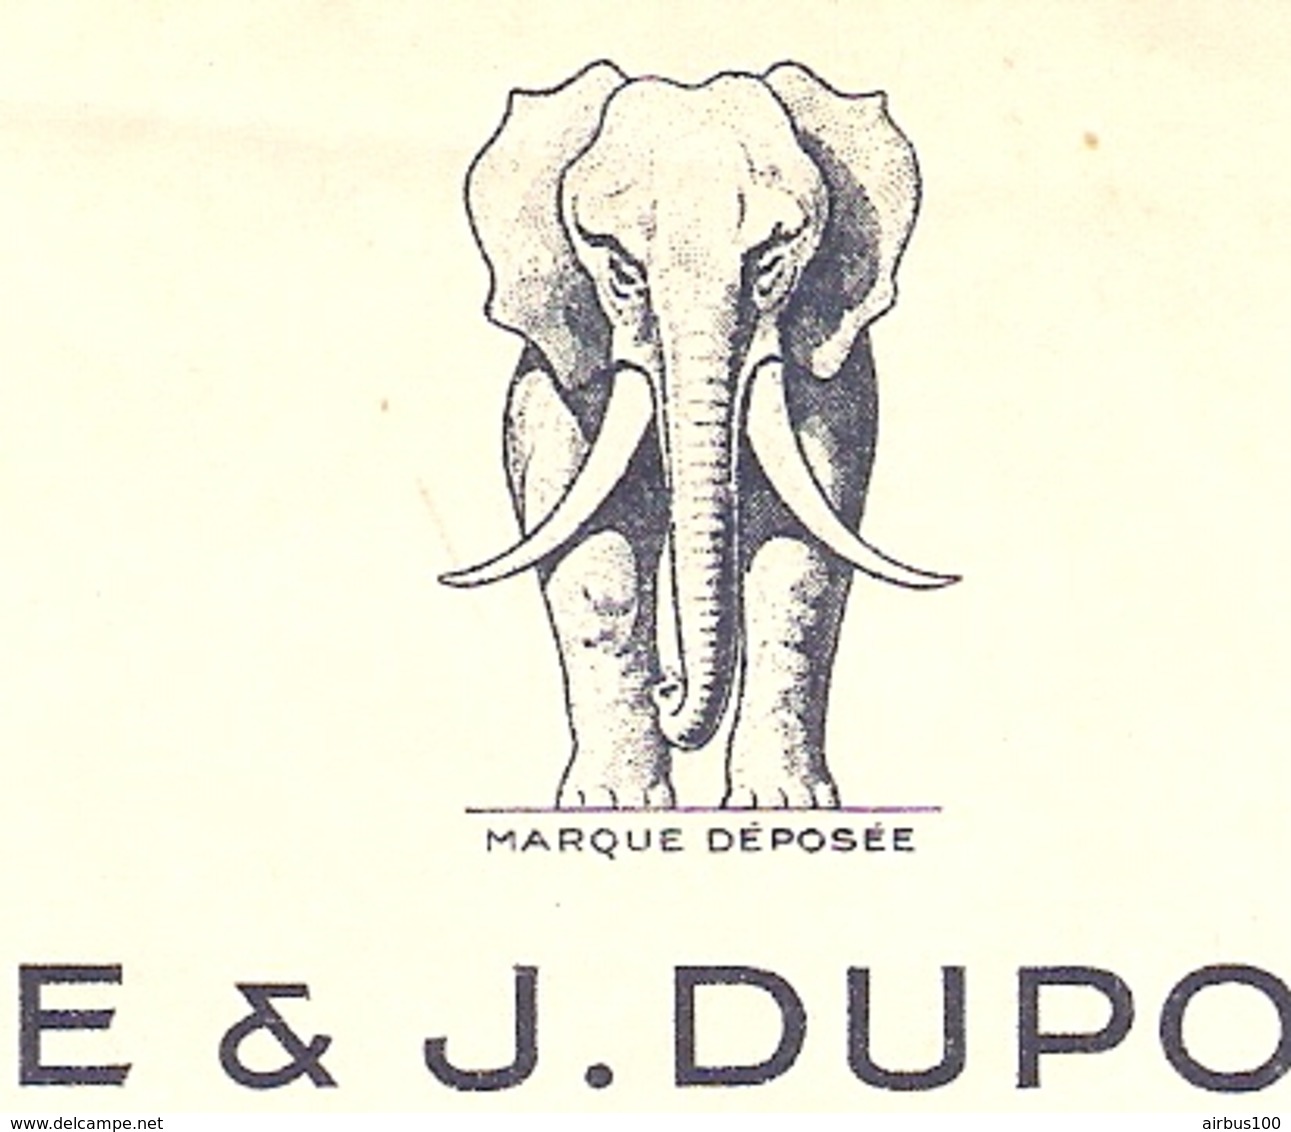 FACTURE 1955 LA BROSSE J. DUPONT RÉUNIS 12 RUE LÉON JOST PARIS 17 ème - BIJOUTERIE ART DENTAIRE - ÉLÉPHANT - Droguerie & Parfumerie